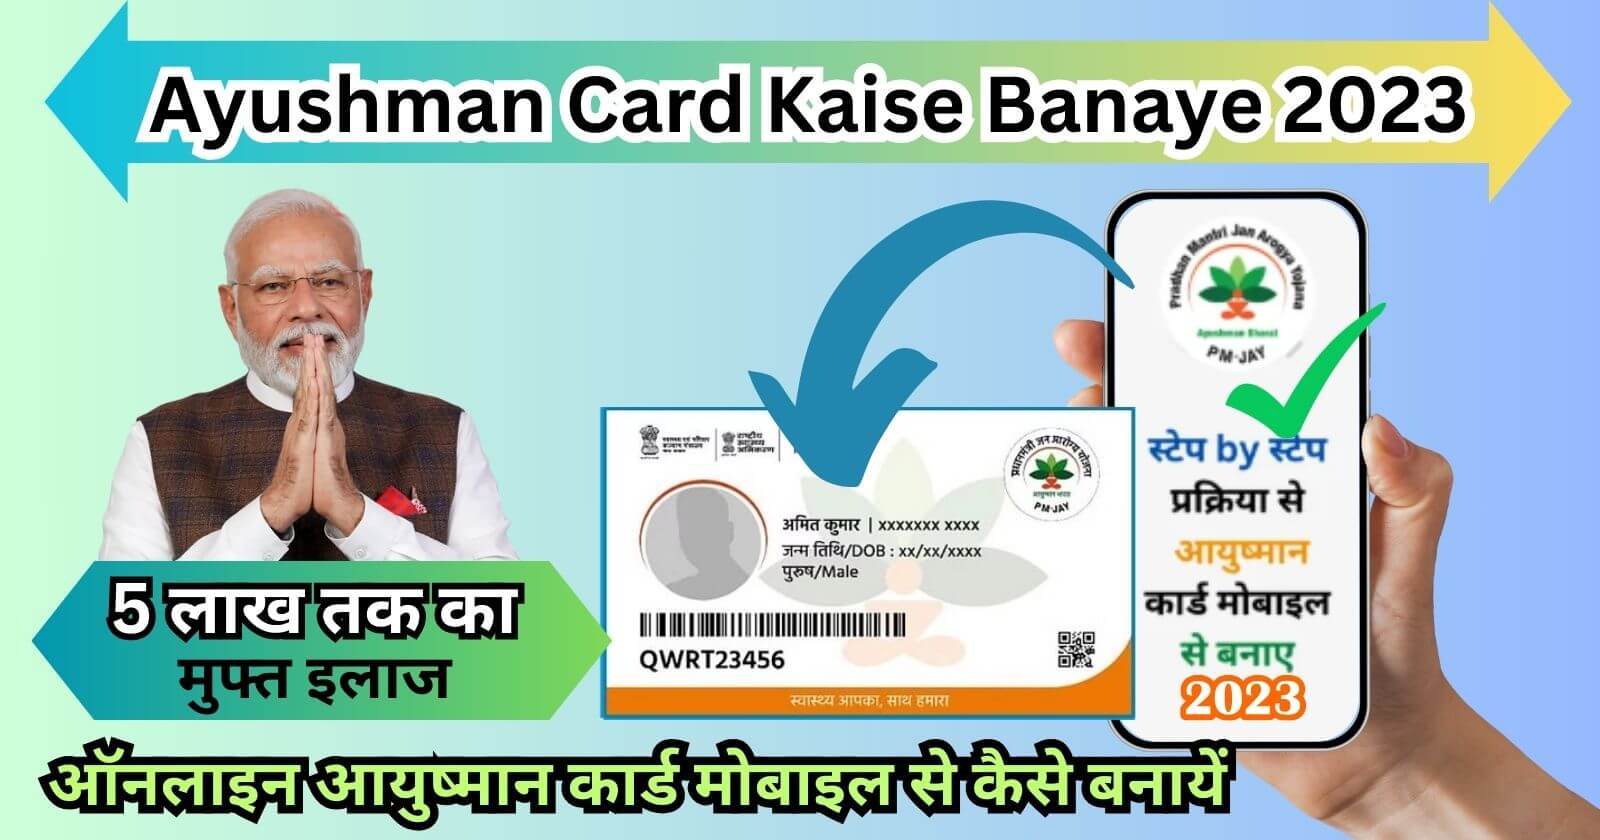 Ayushman Card Kaise Banaye